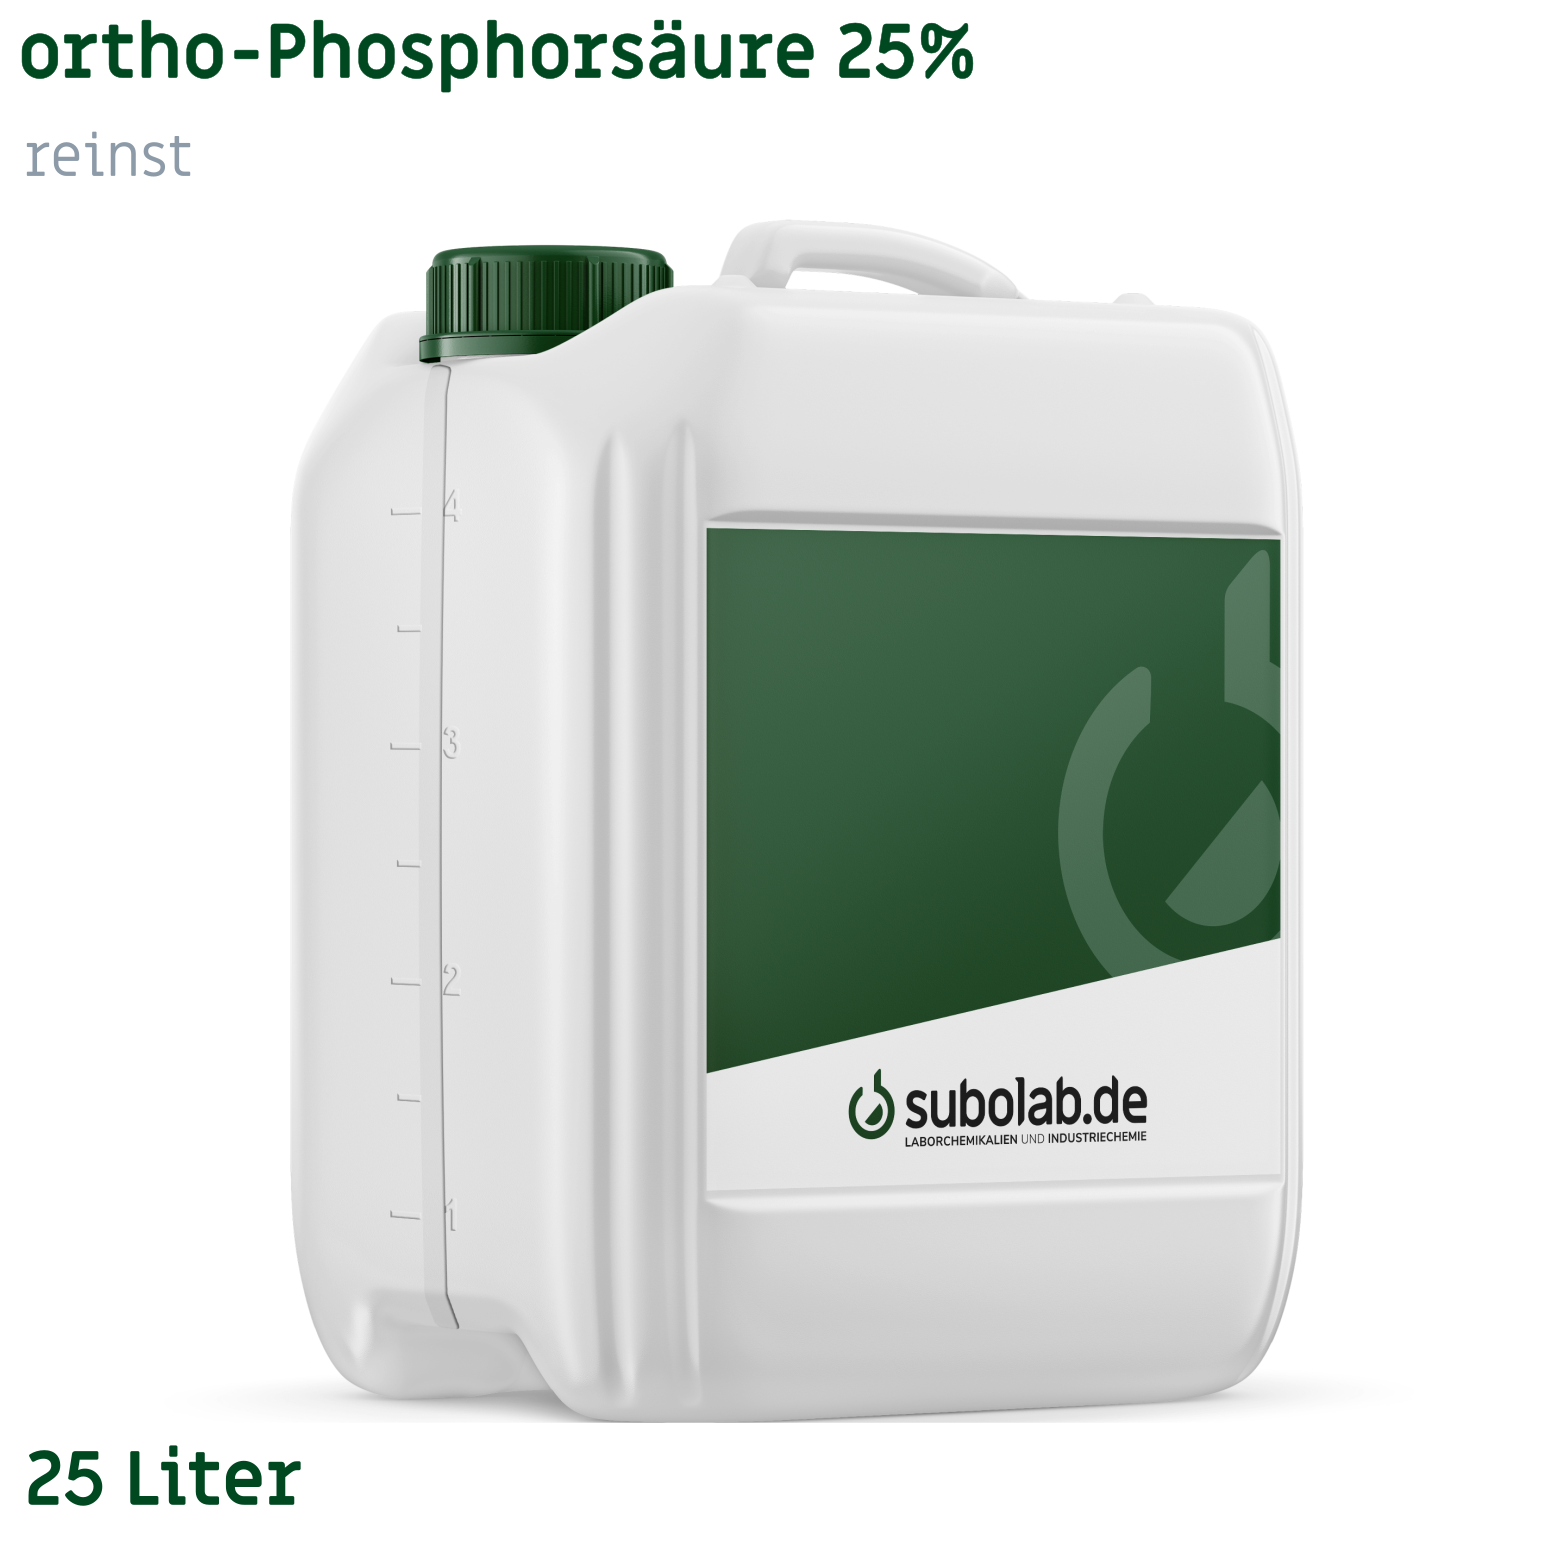 Bild von ortho-Phosphorsäure 25% reinst (25 Liter)